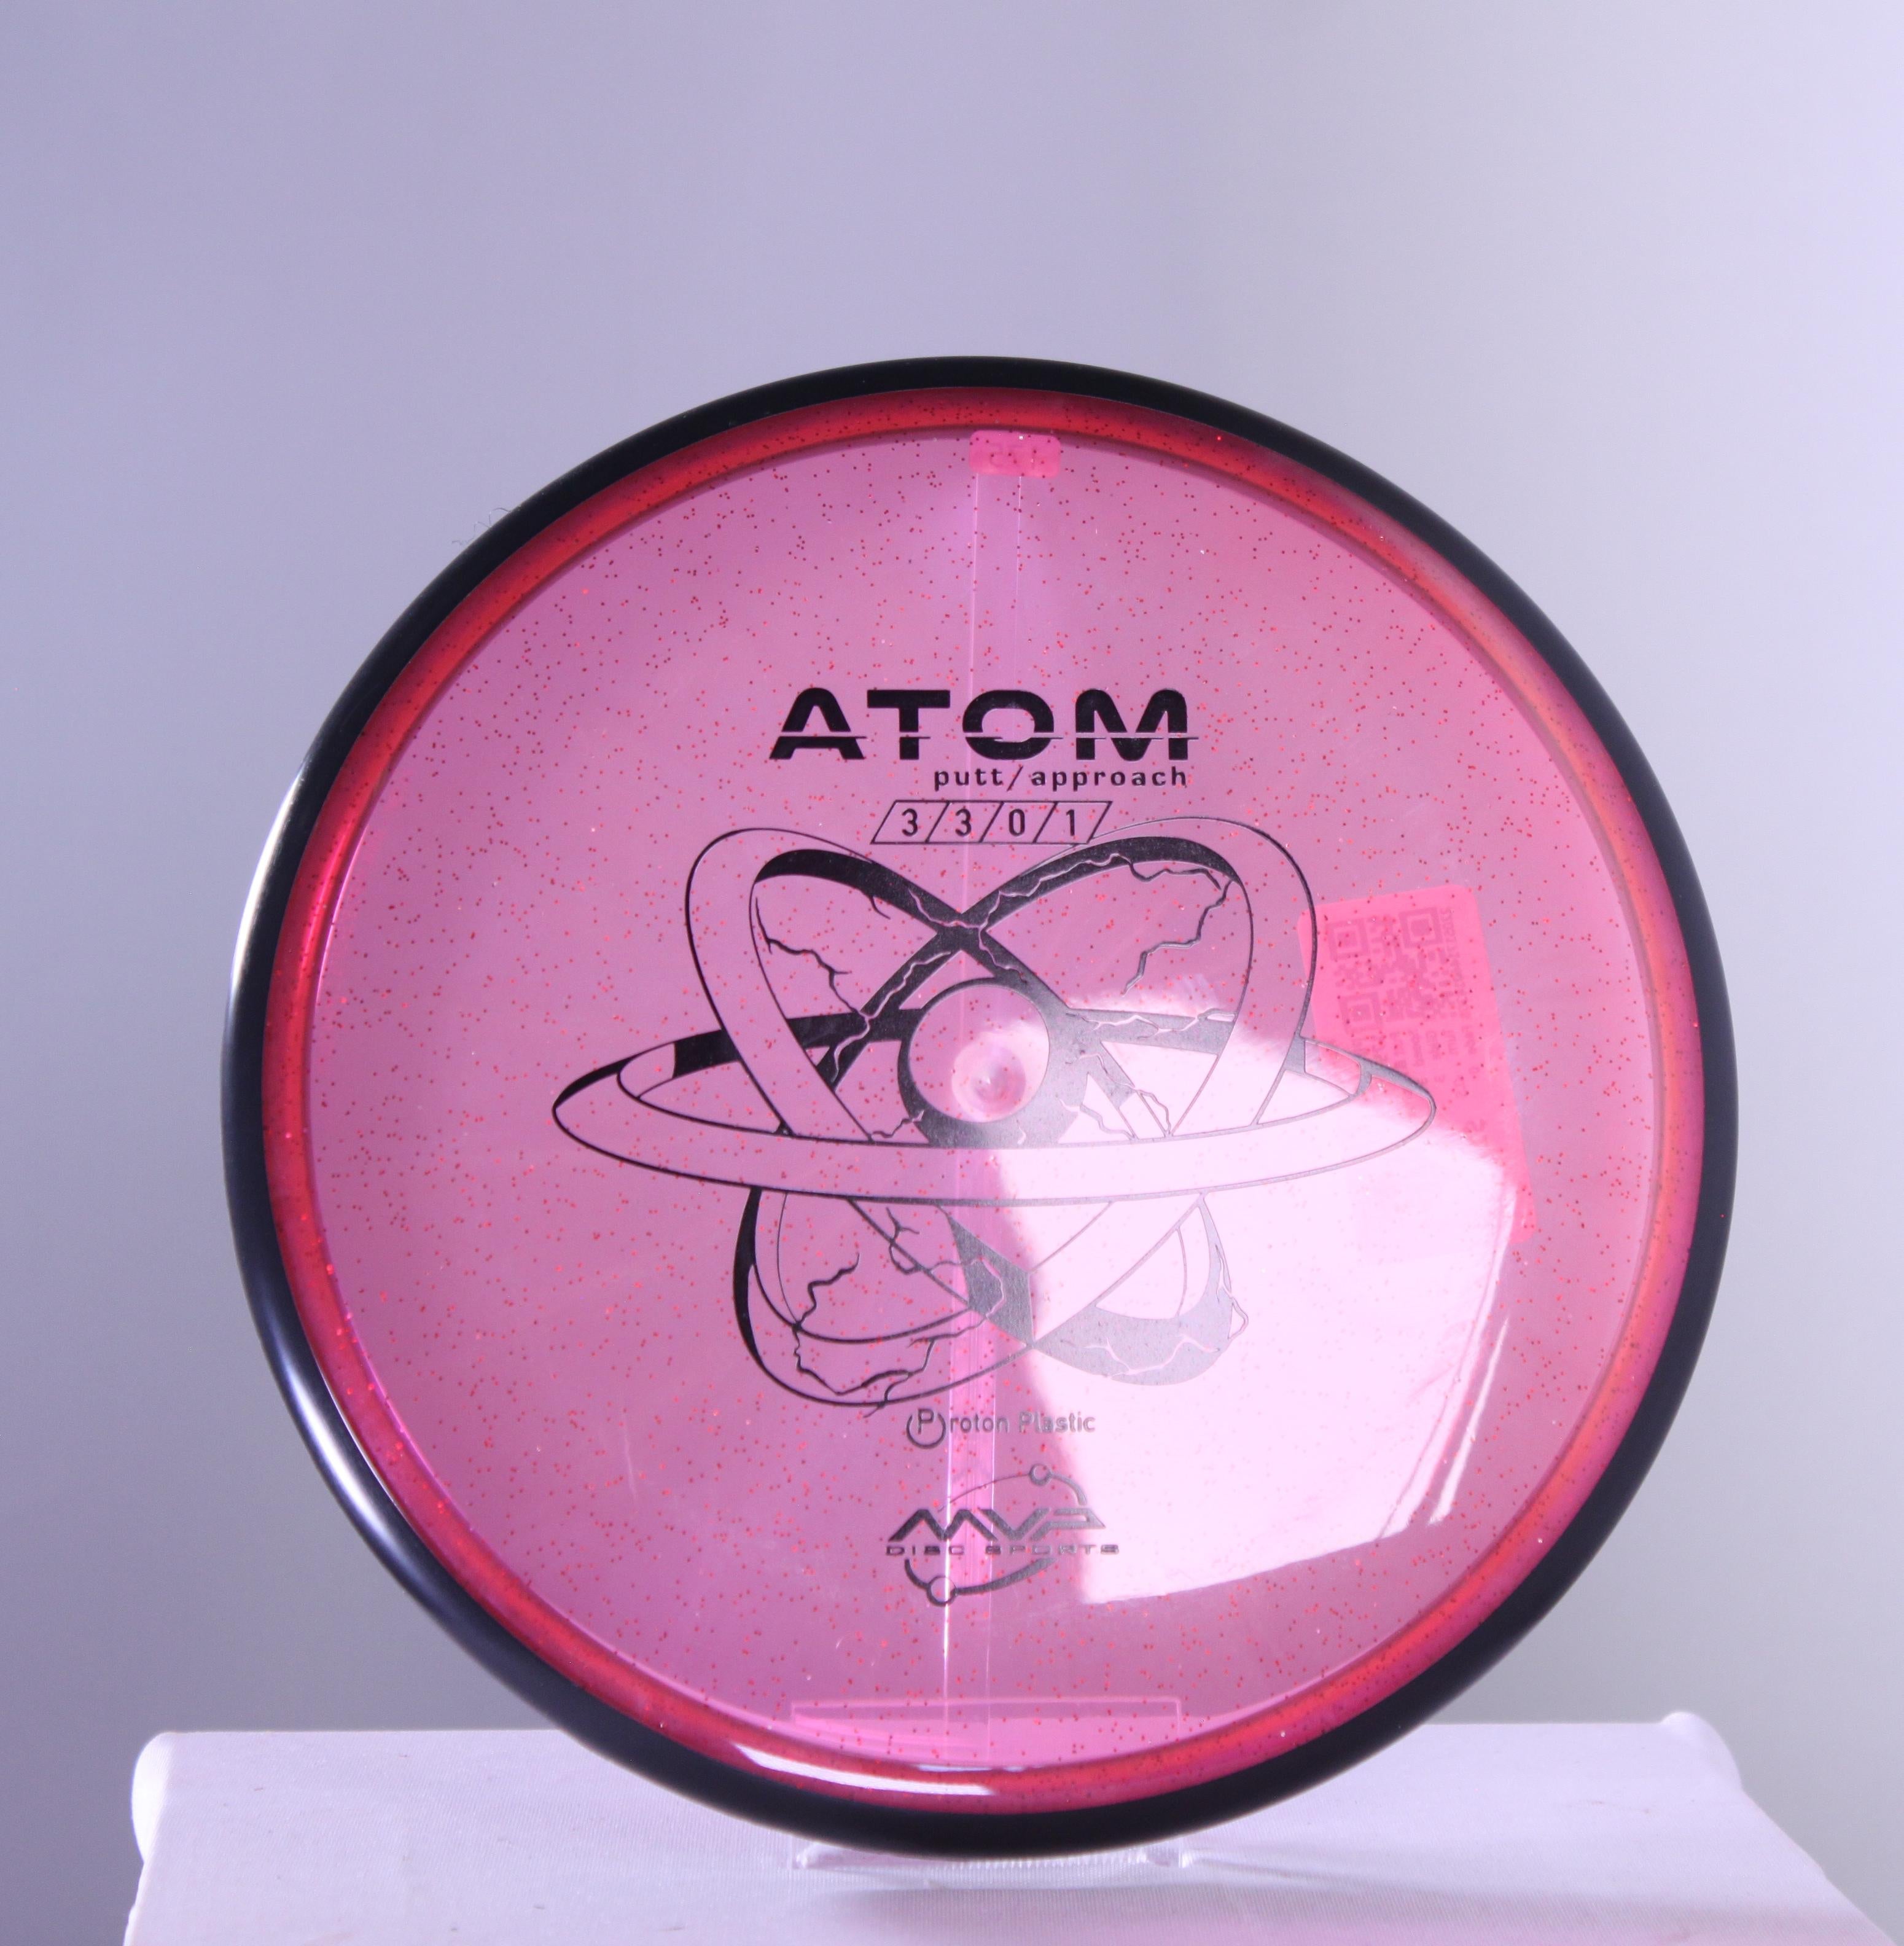 Proton Atom